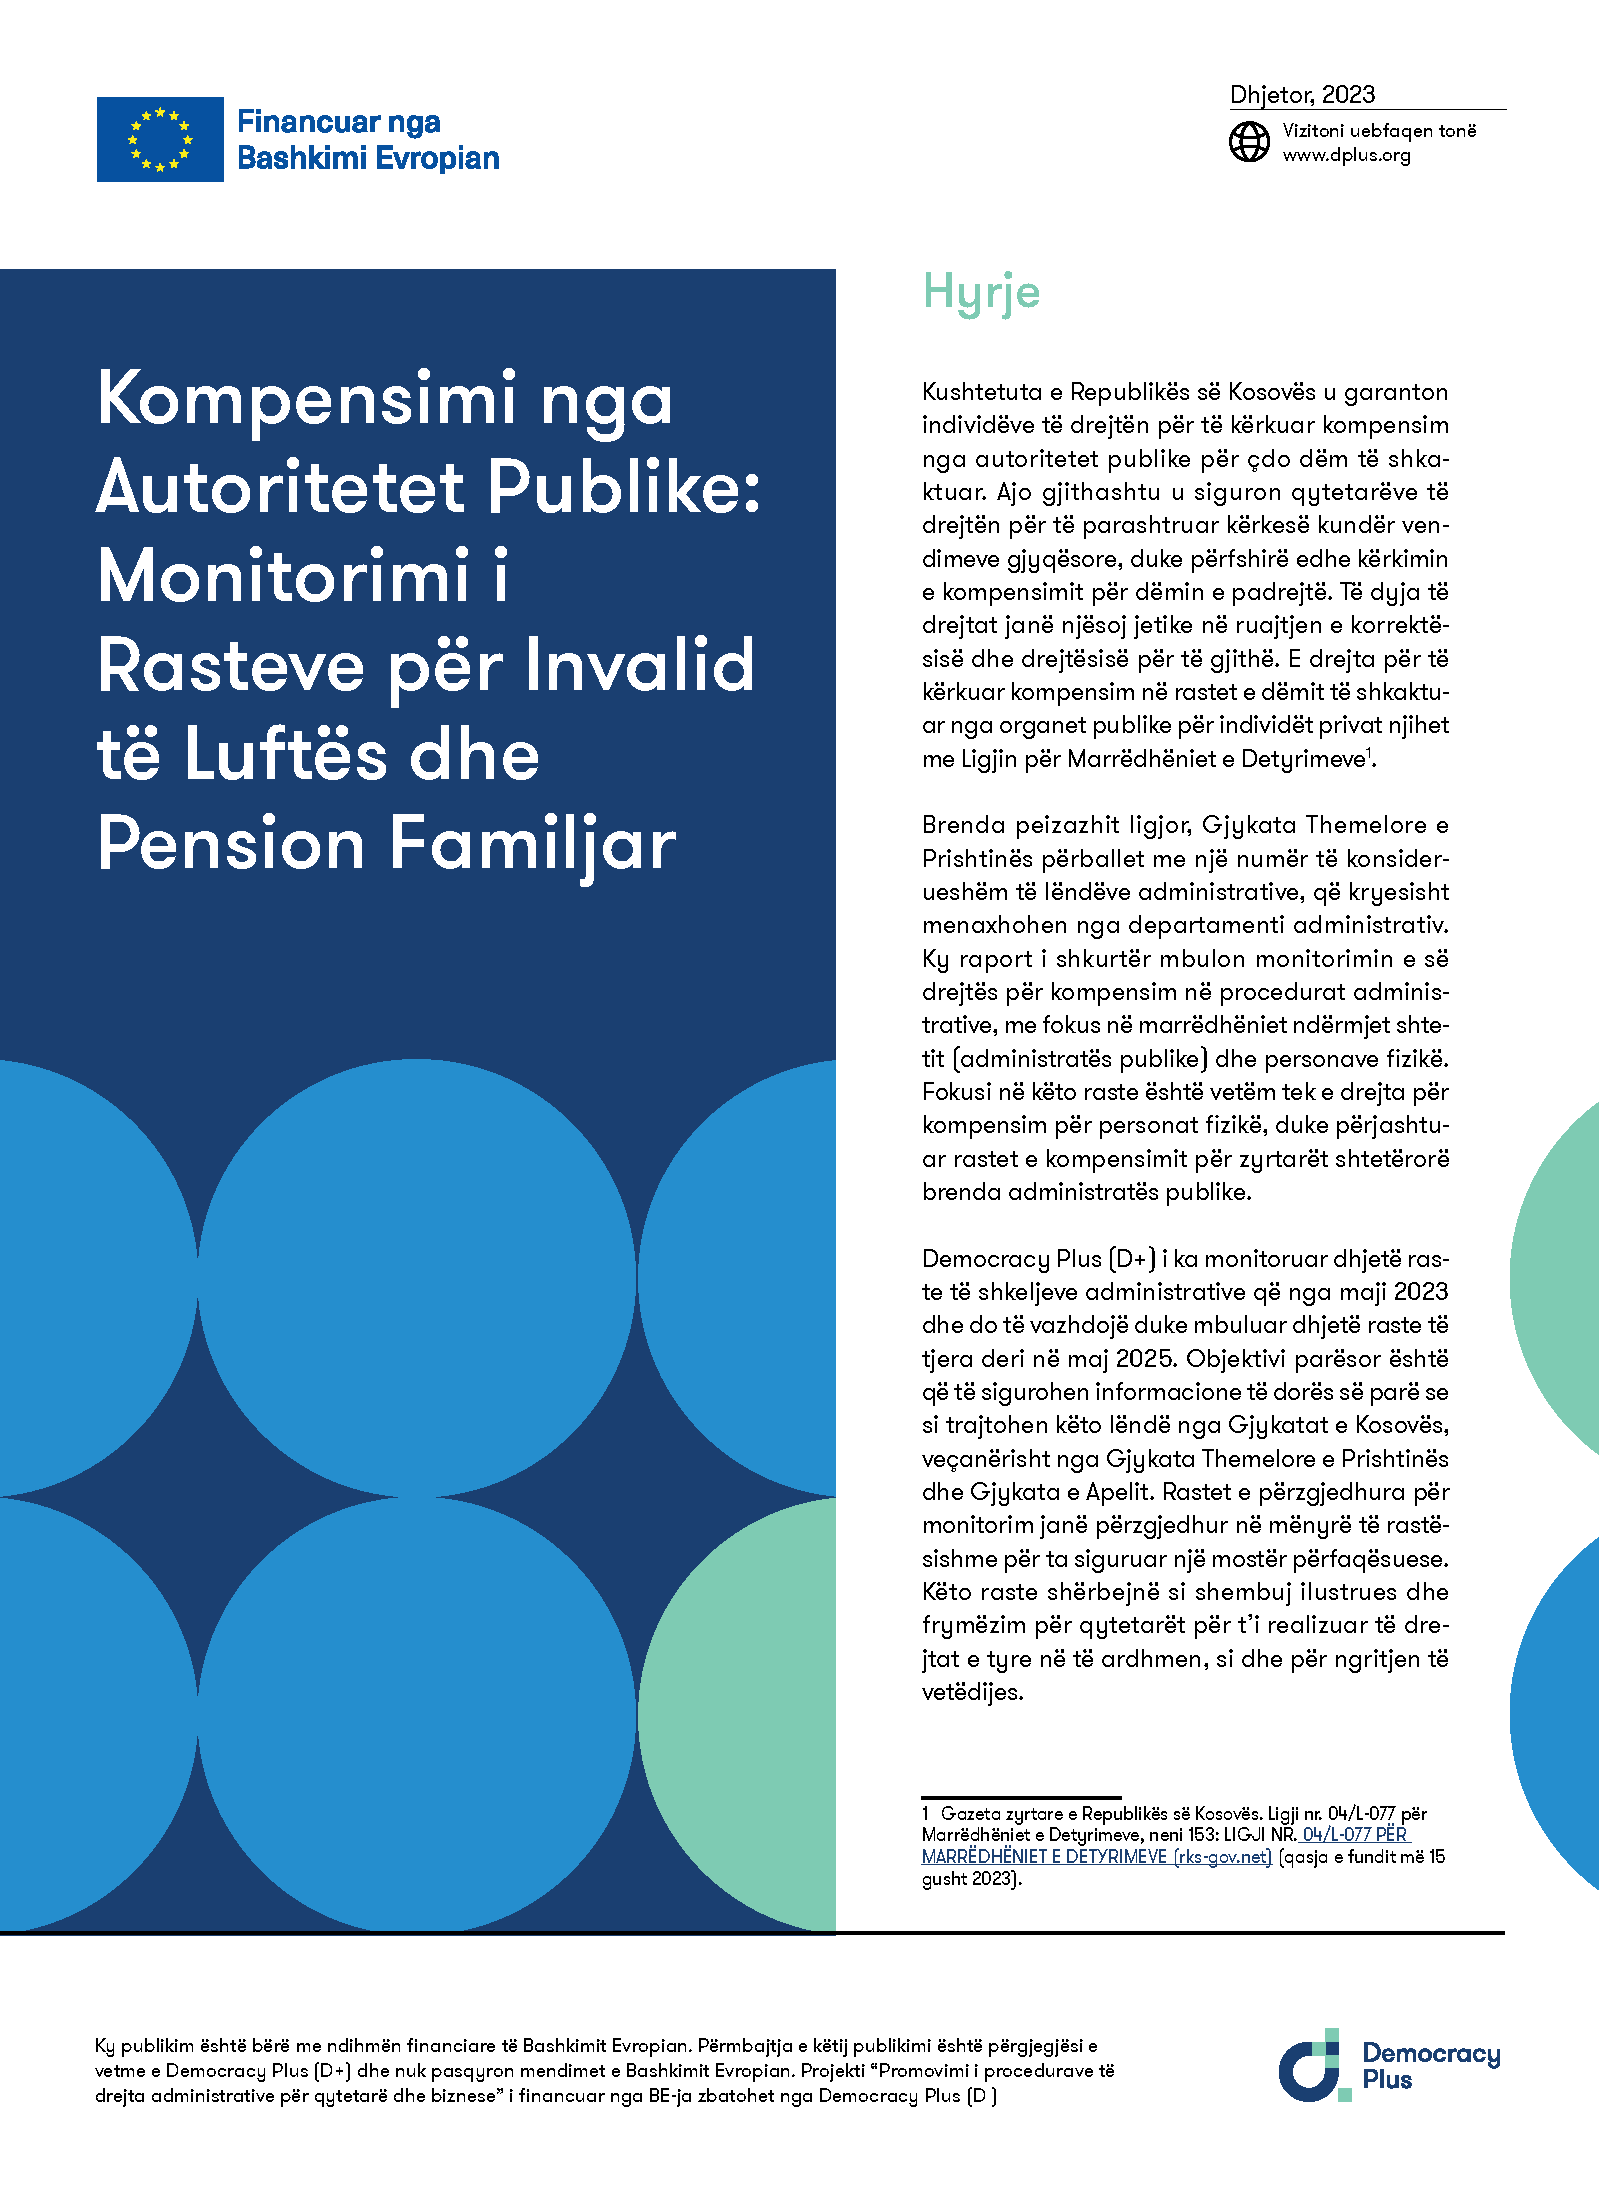 Kompensimi nga Autoritetet Publike: Monitorimi i Rasteve për Invalid të Luftës dhe Pension Familjar